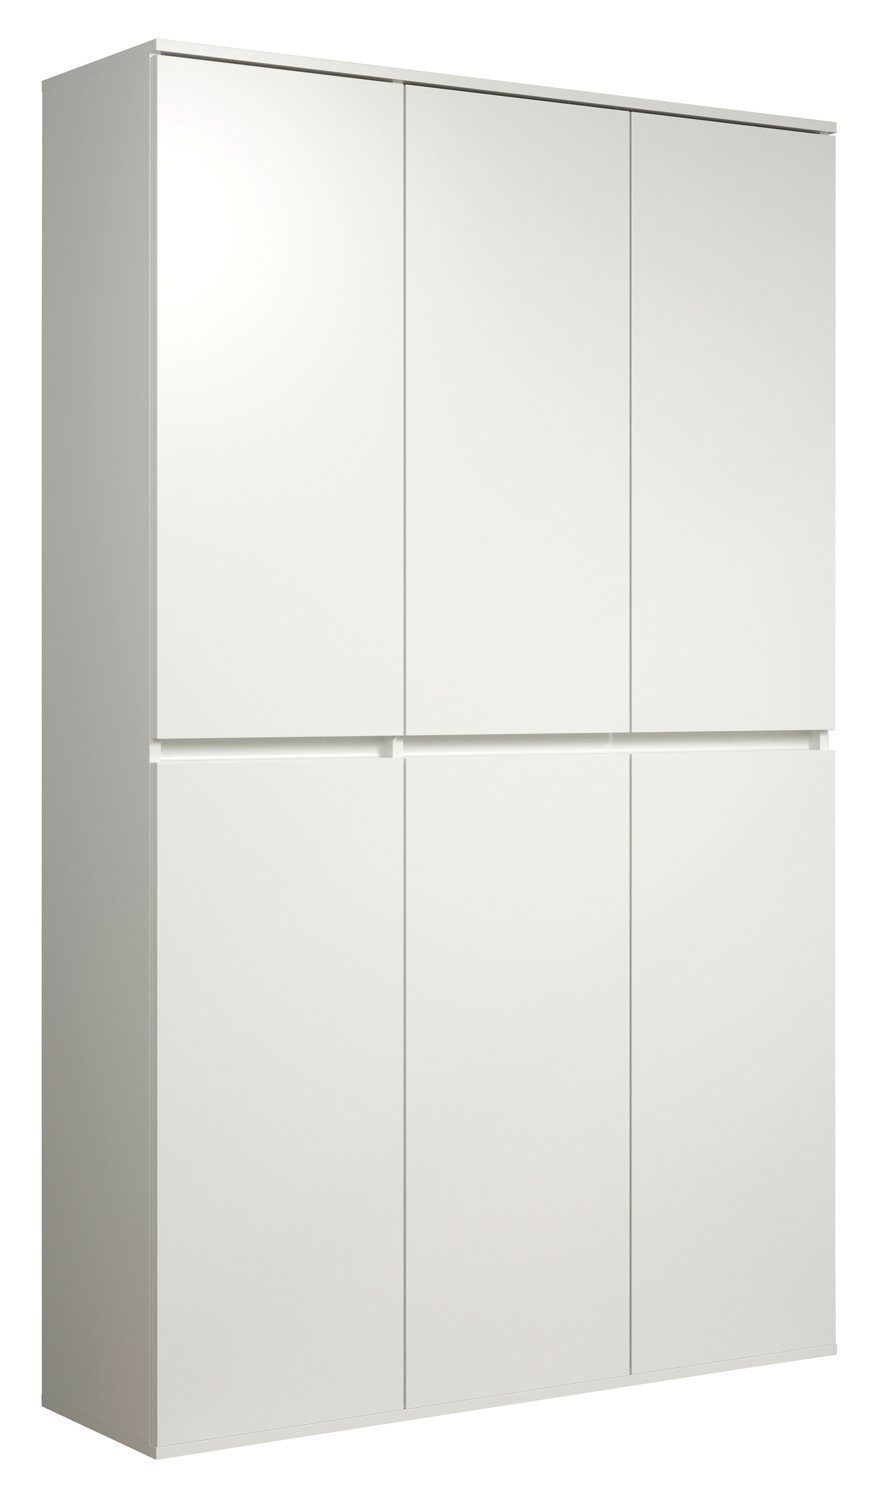 Mehrzweckschrank NEVADA, B 111 cm x H 191 cm, Weiß, 6 Türen